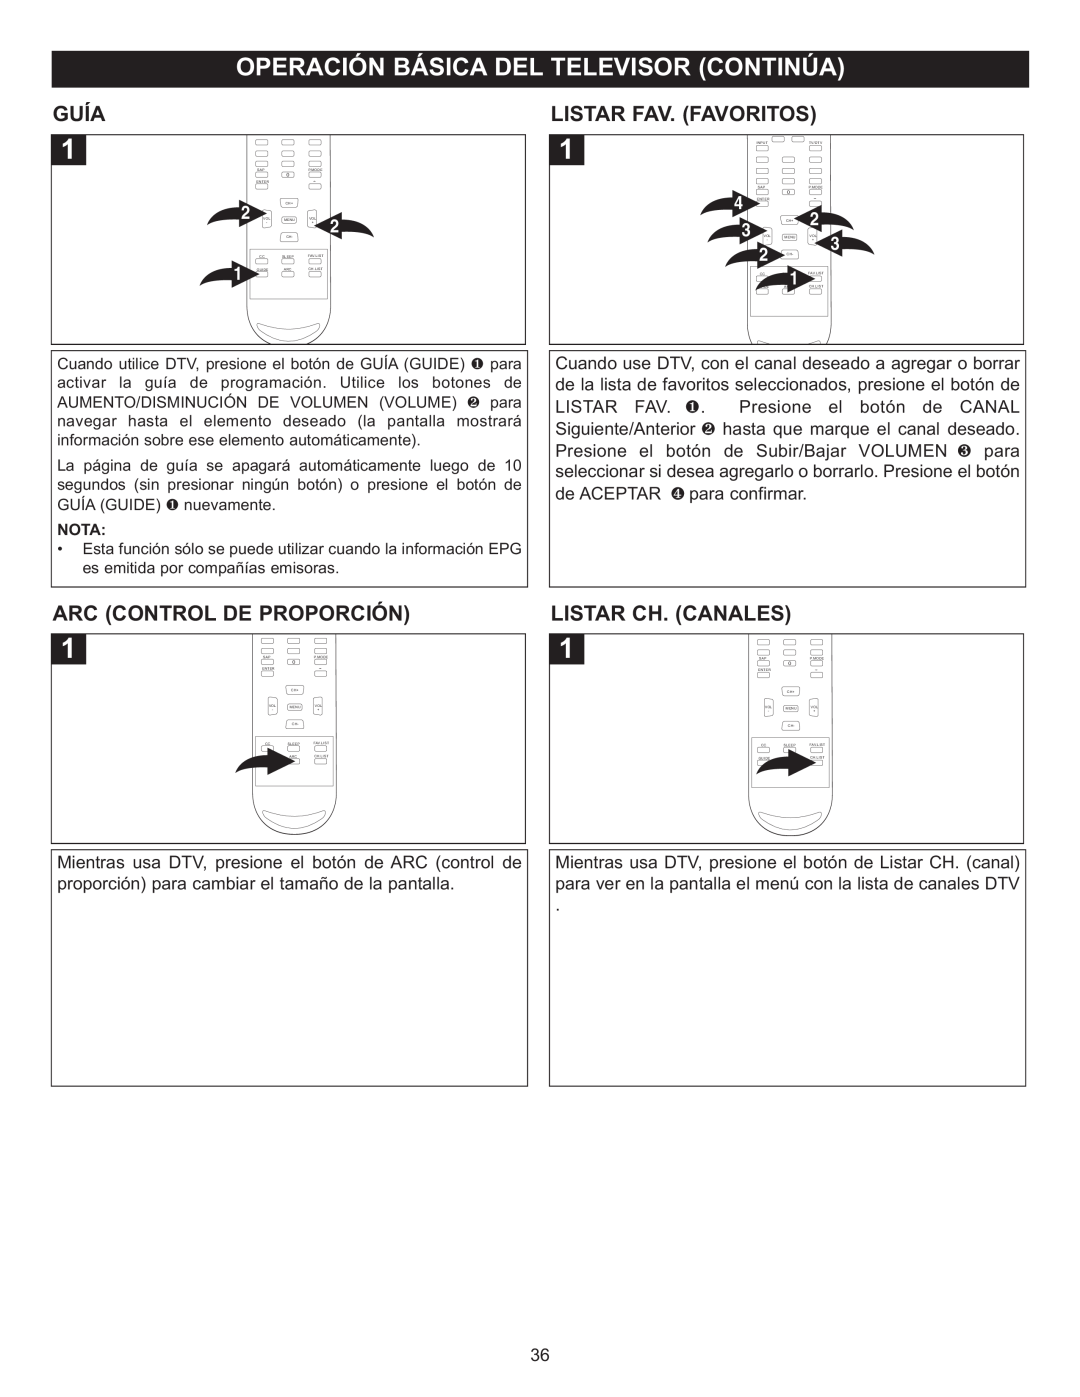 Memorex MT2028D-BLK manual Guía, Arc Control De Proporción, Listar Fav.Favor Itos, Listar Ch. Canales 